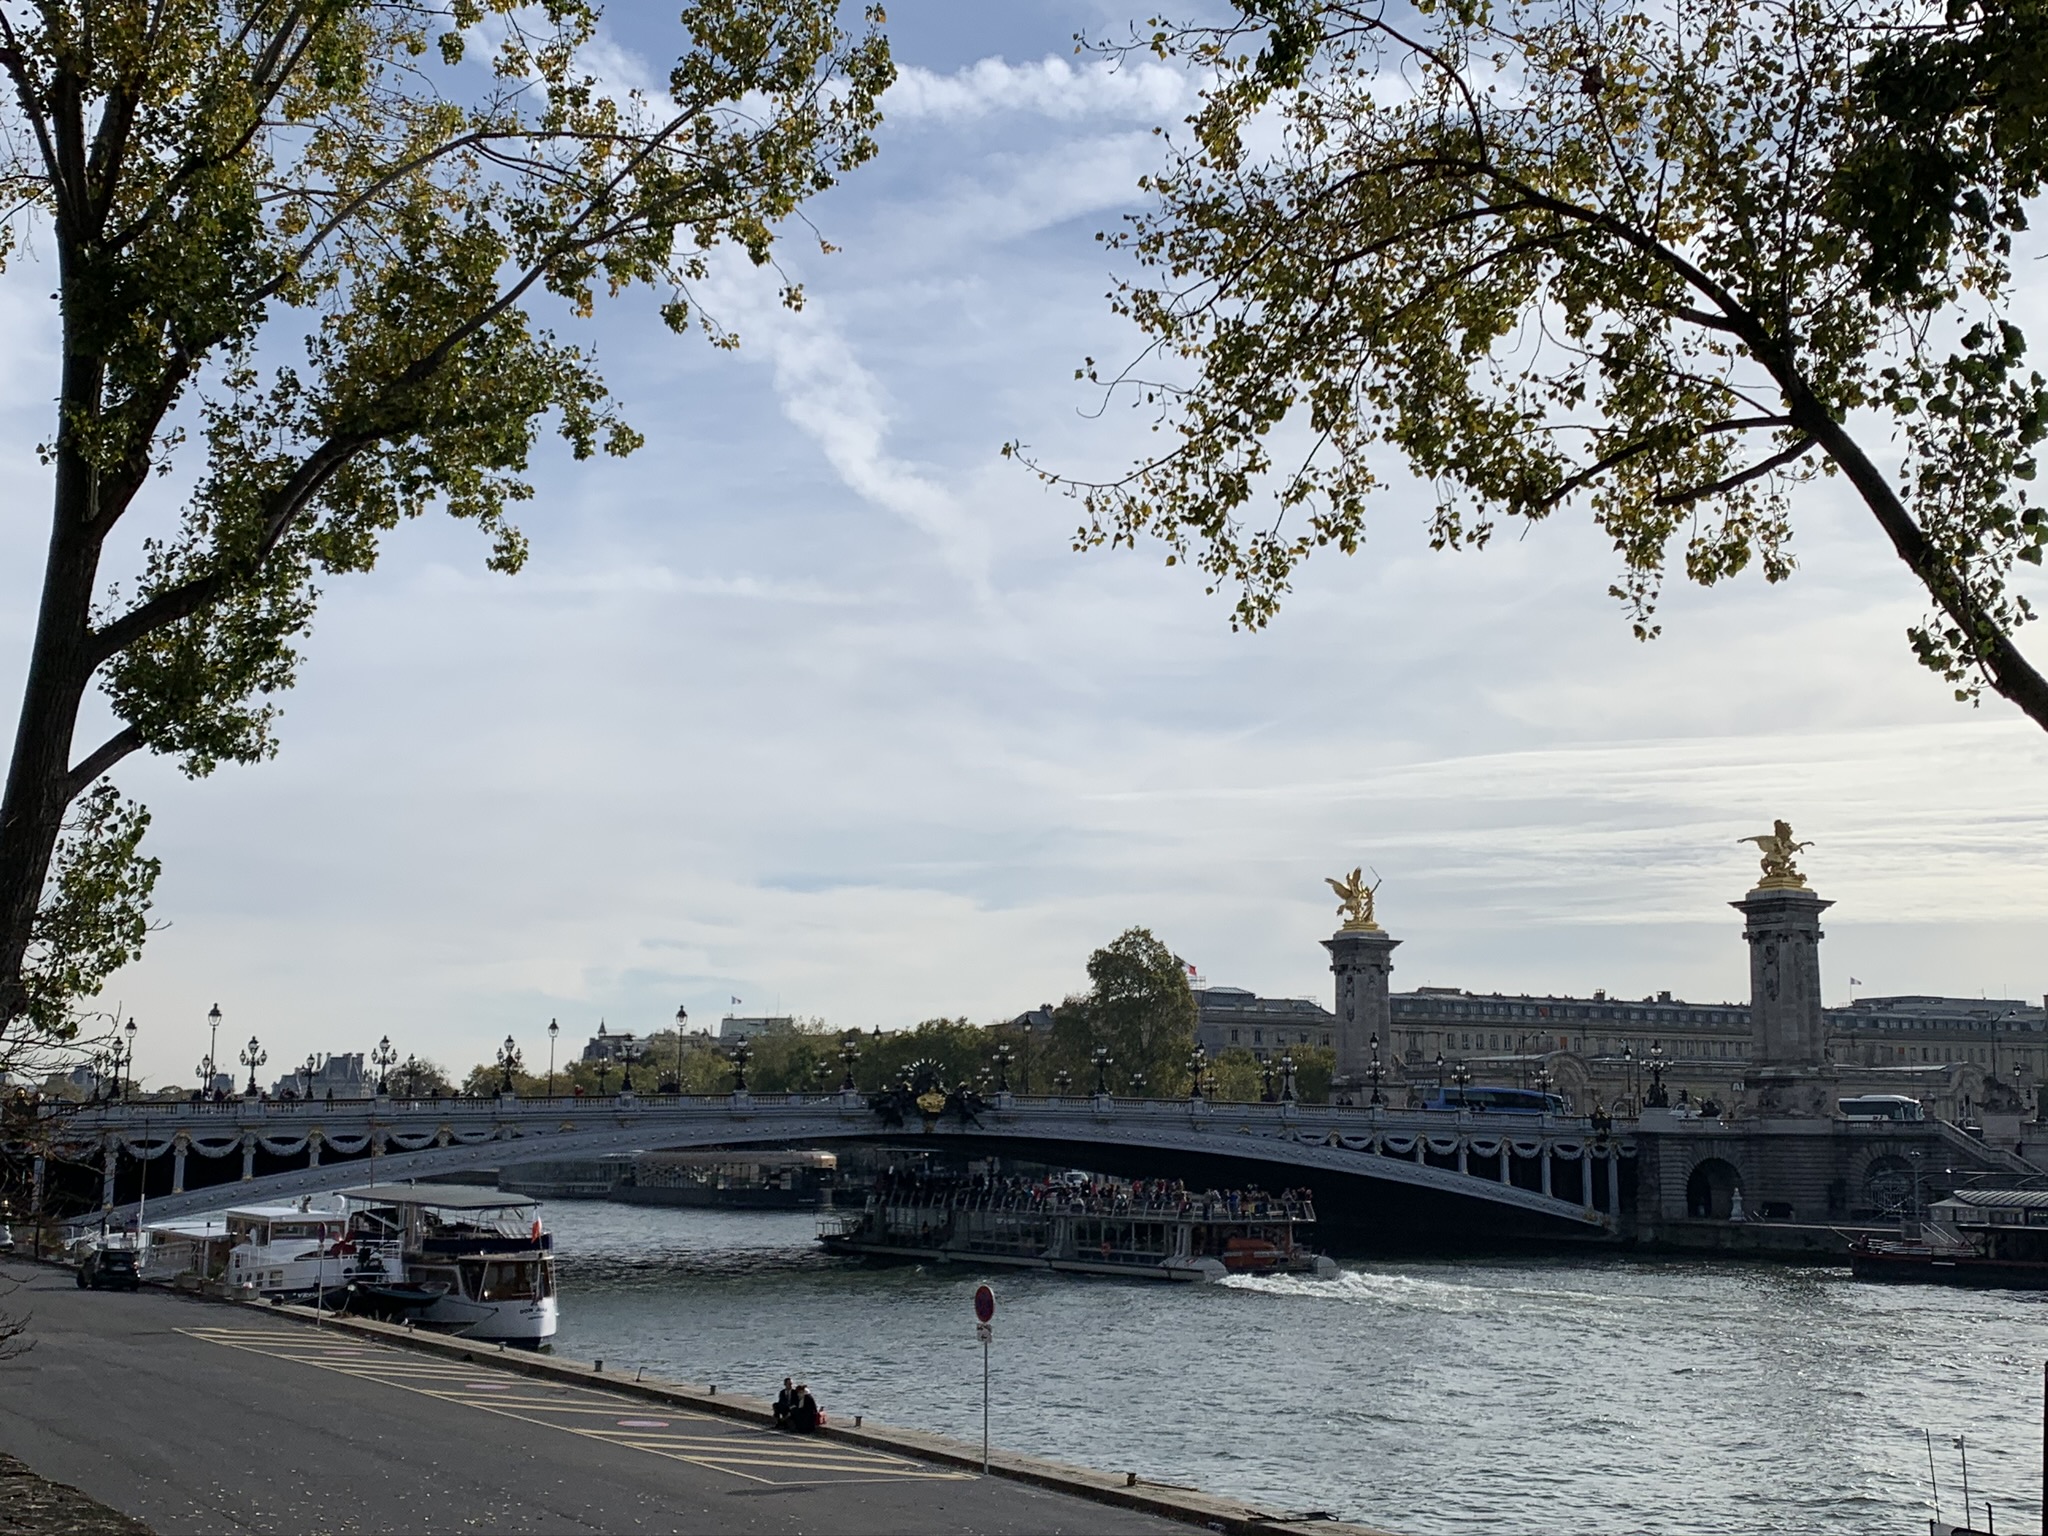 pontos turísticos de paris ponte alexandre III